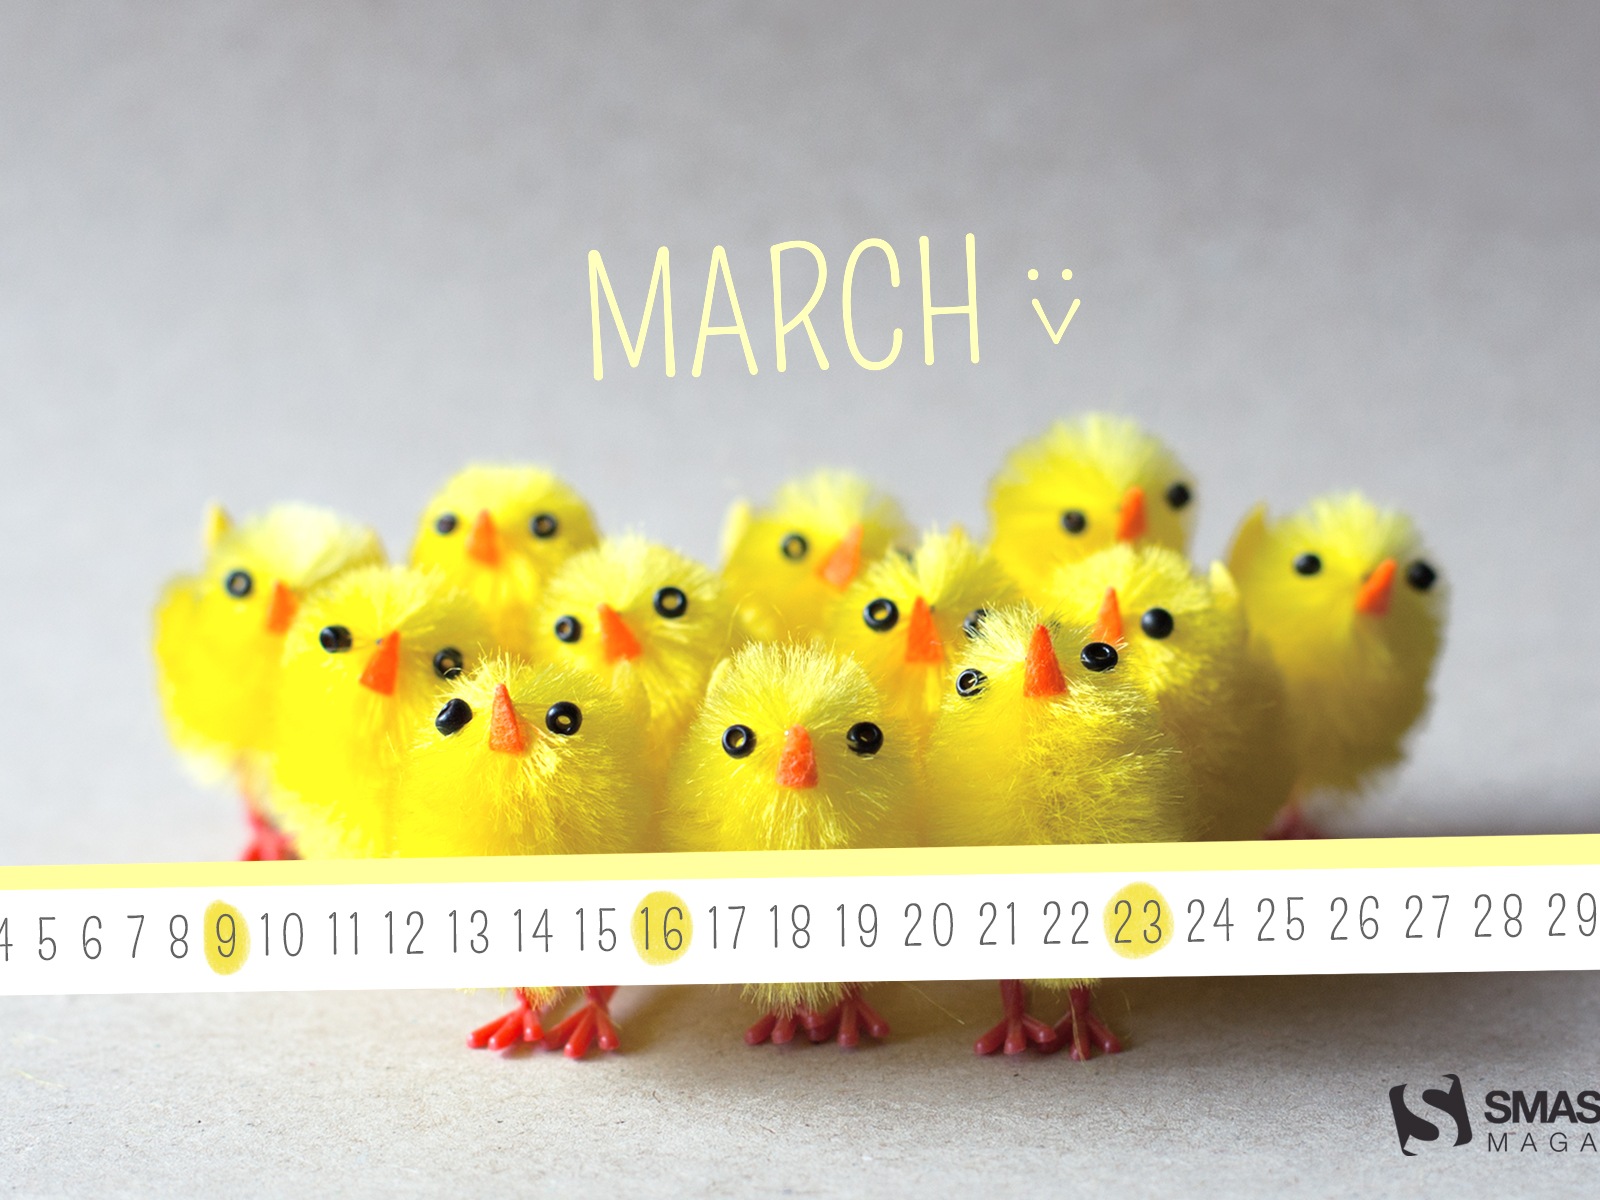 Март 2014 календарь обои (1) #20 - 1600x1200